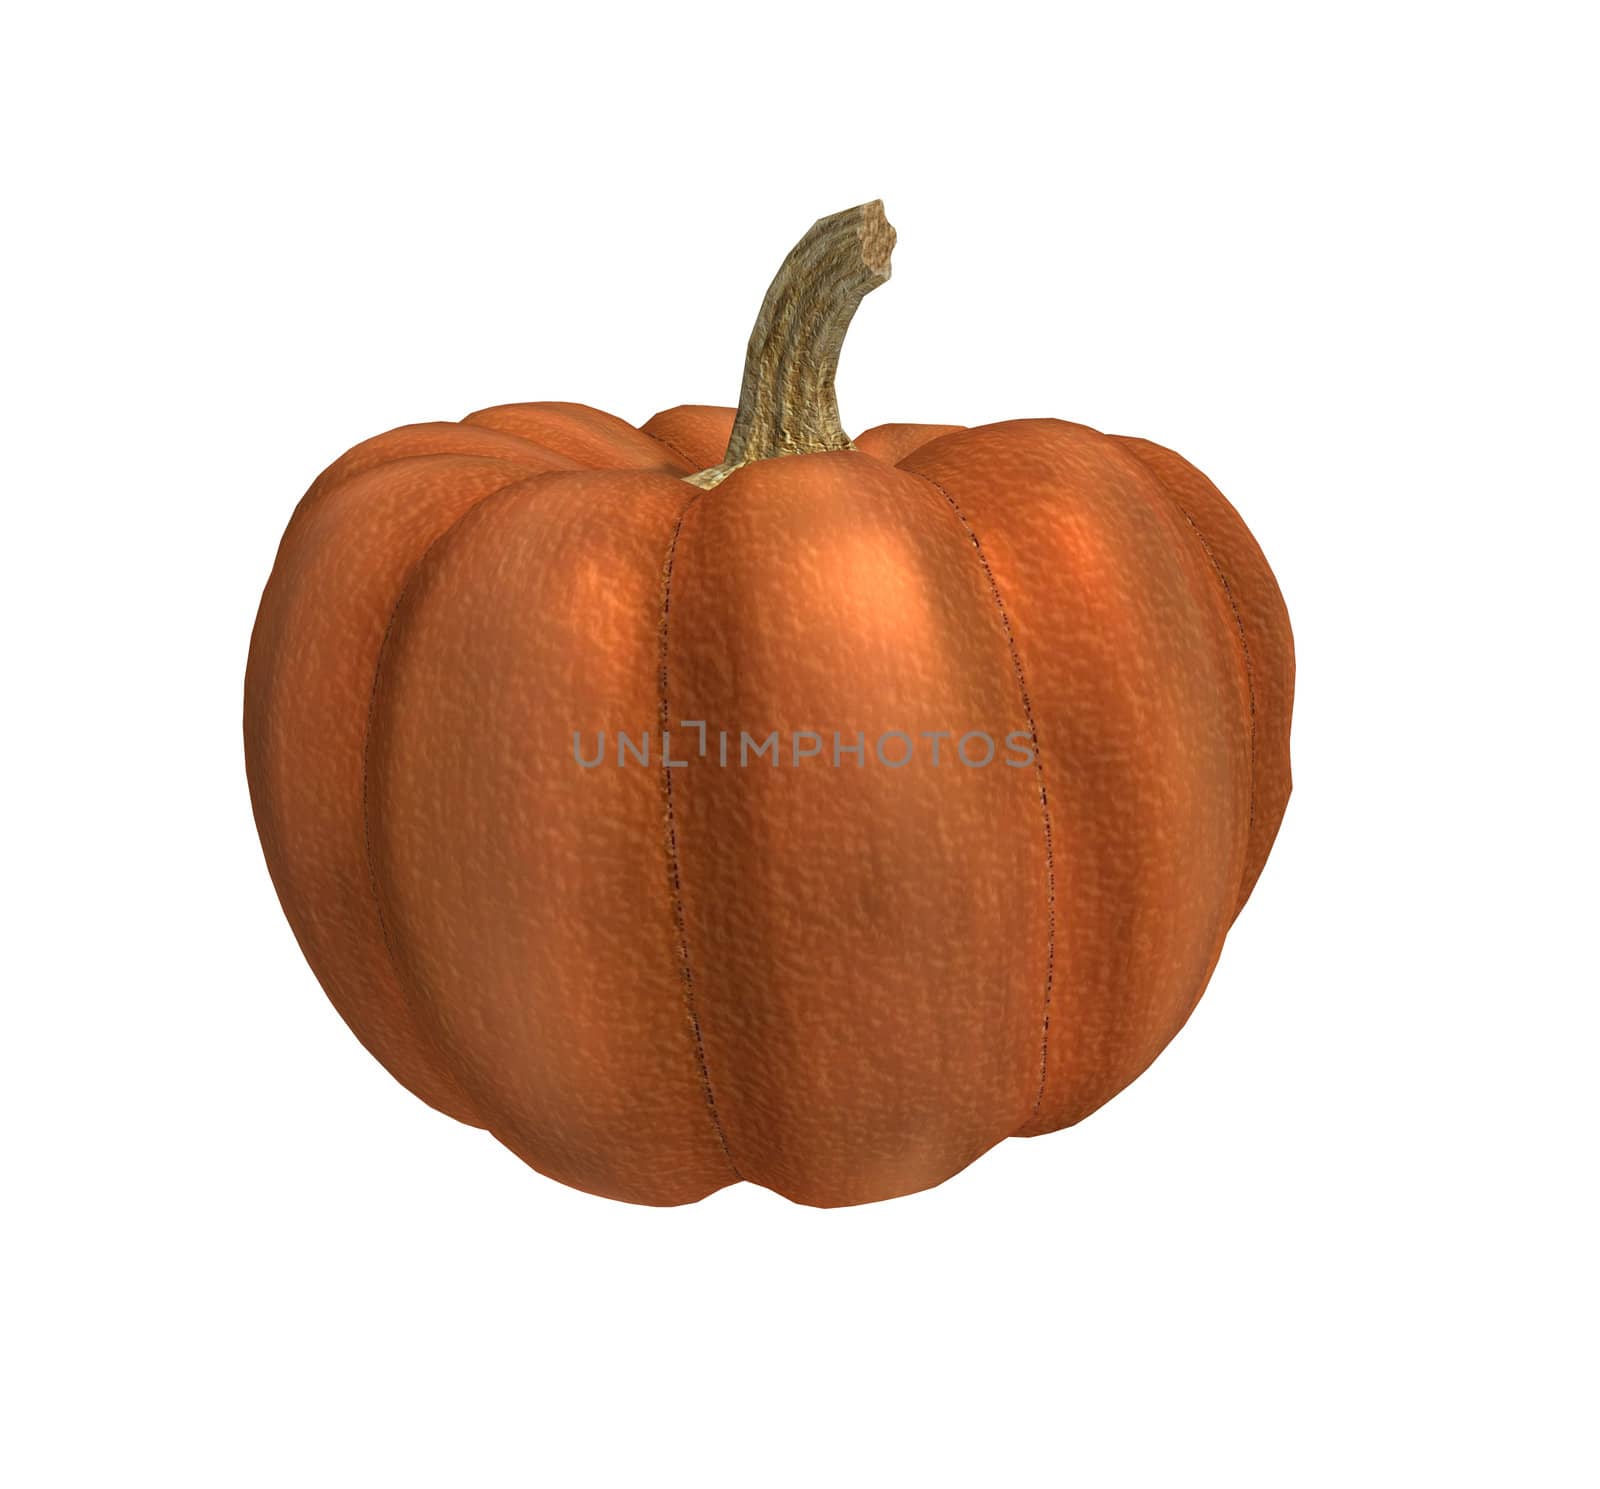 One orange pumpkin on a white background